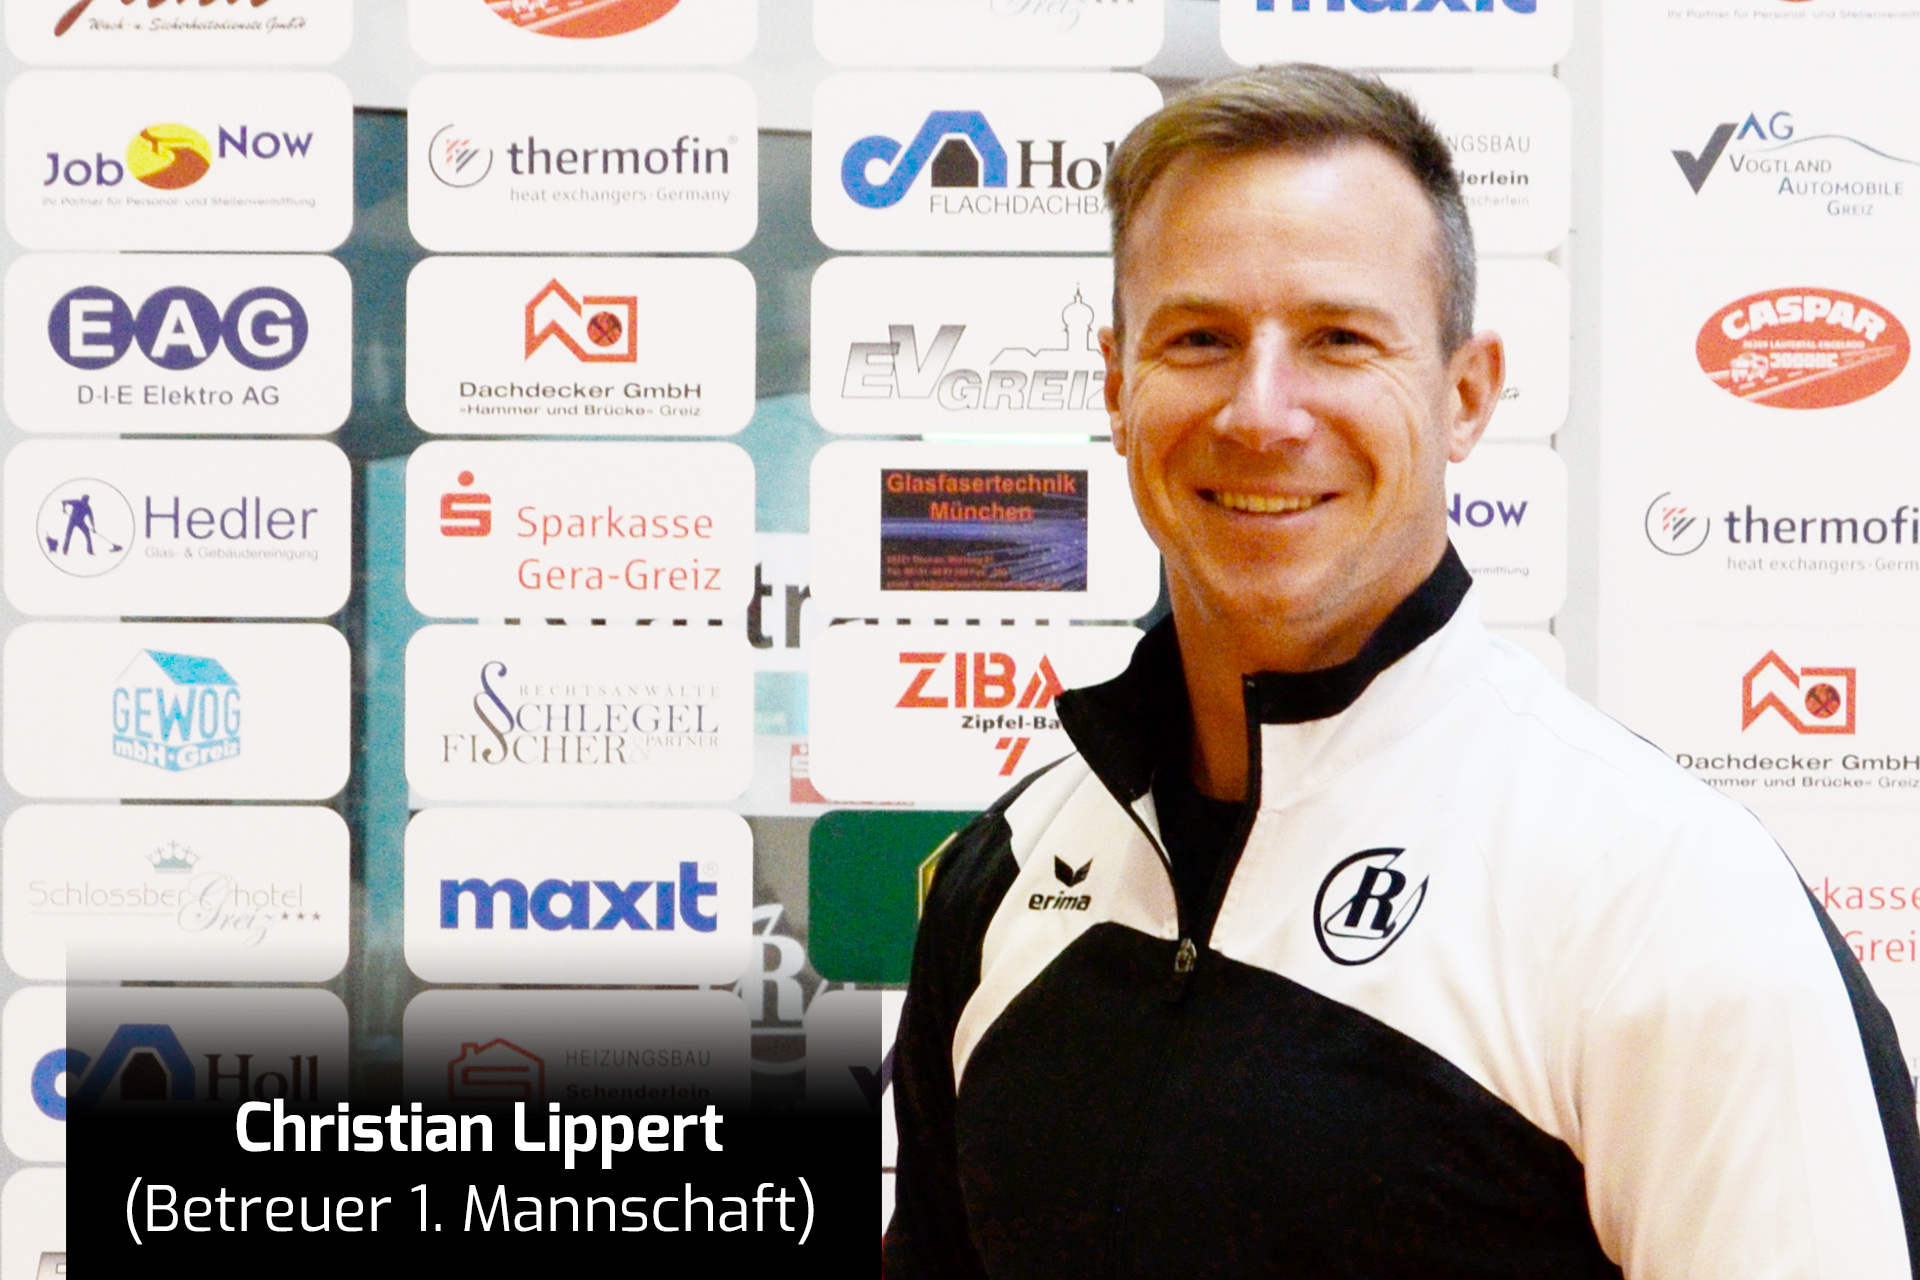 Christian Lippert